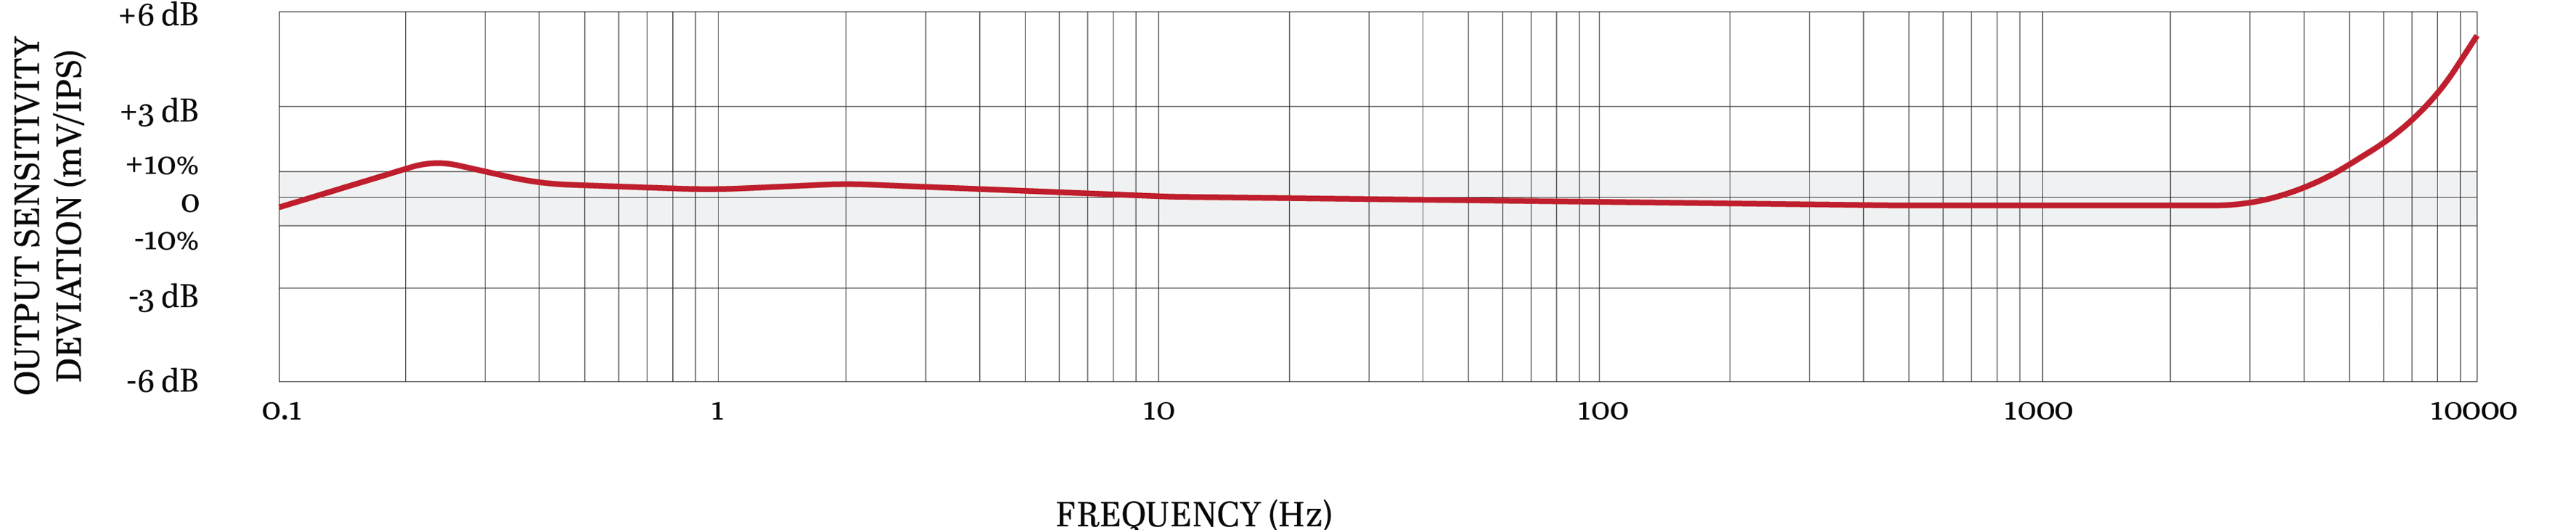 TXFA333-VE 典型频率响应